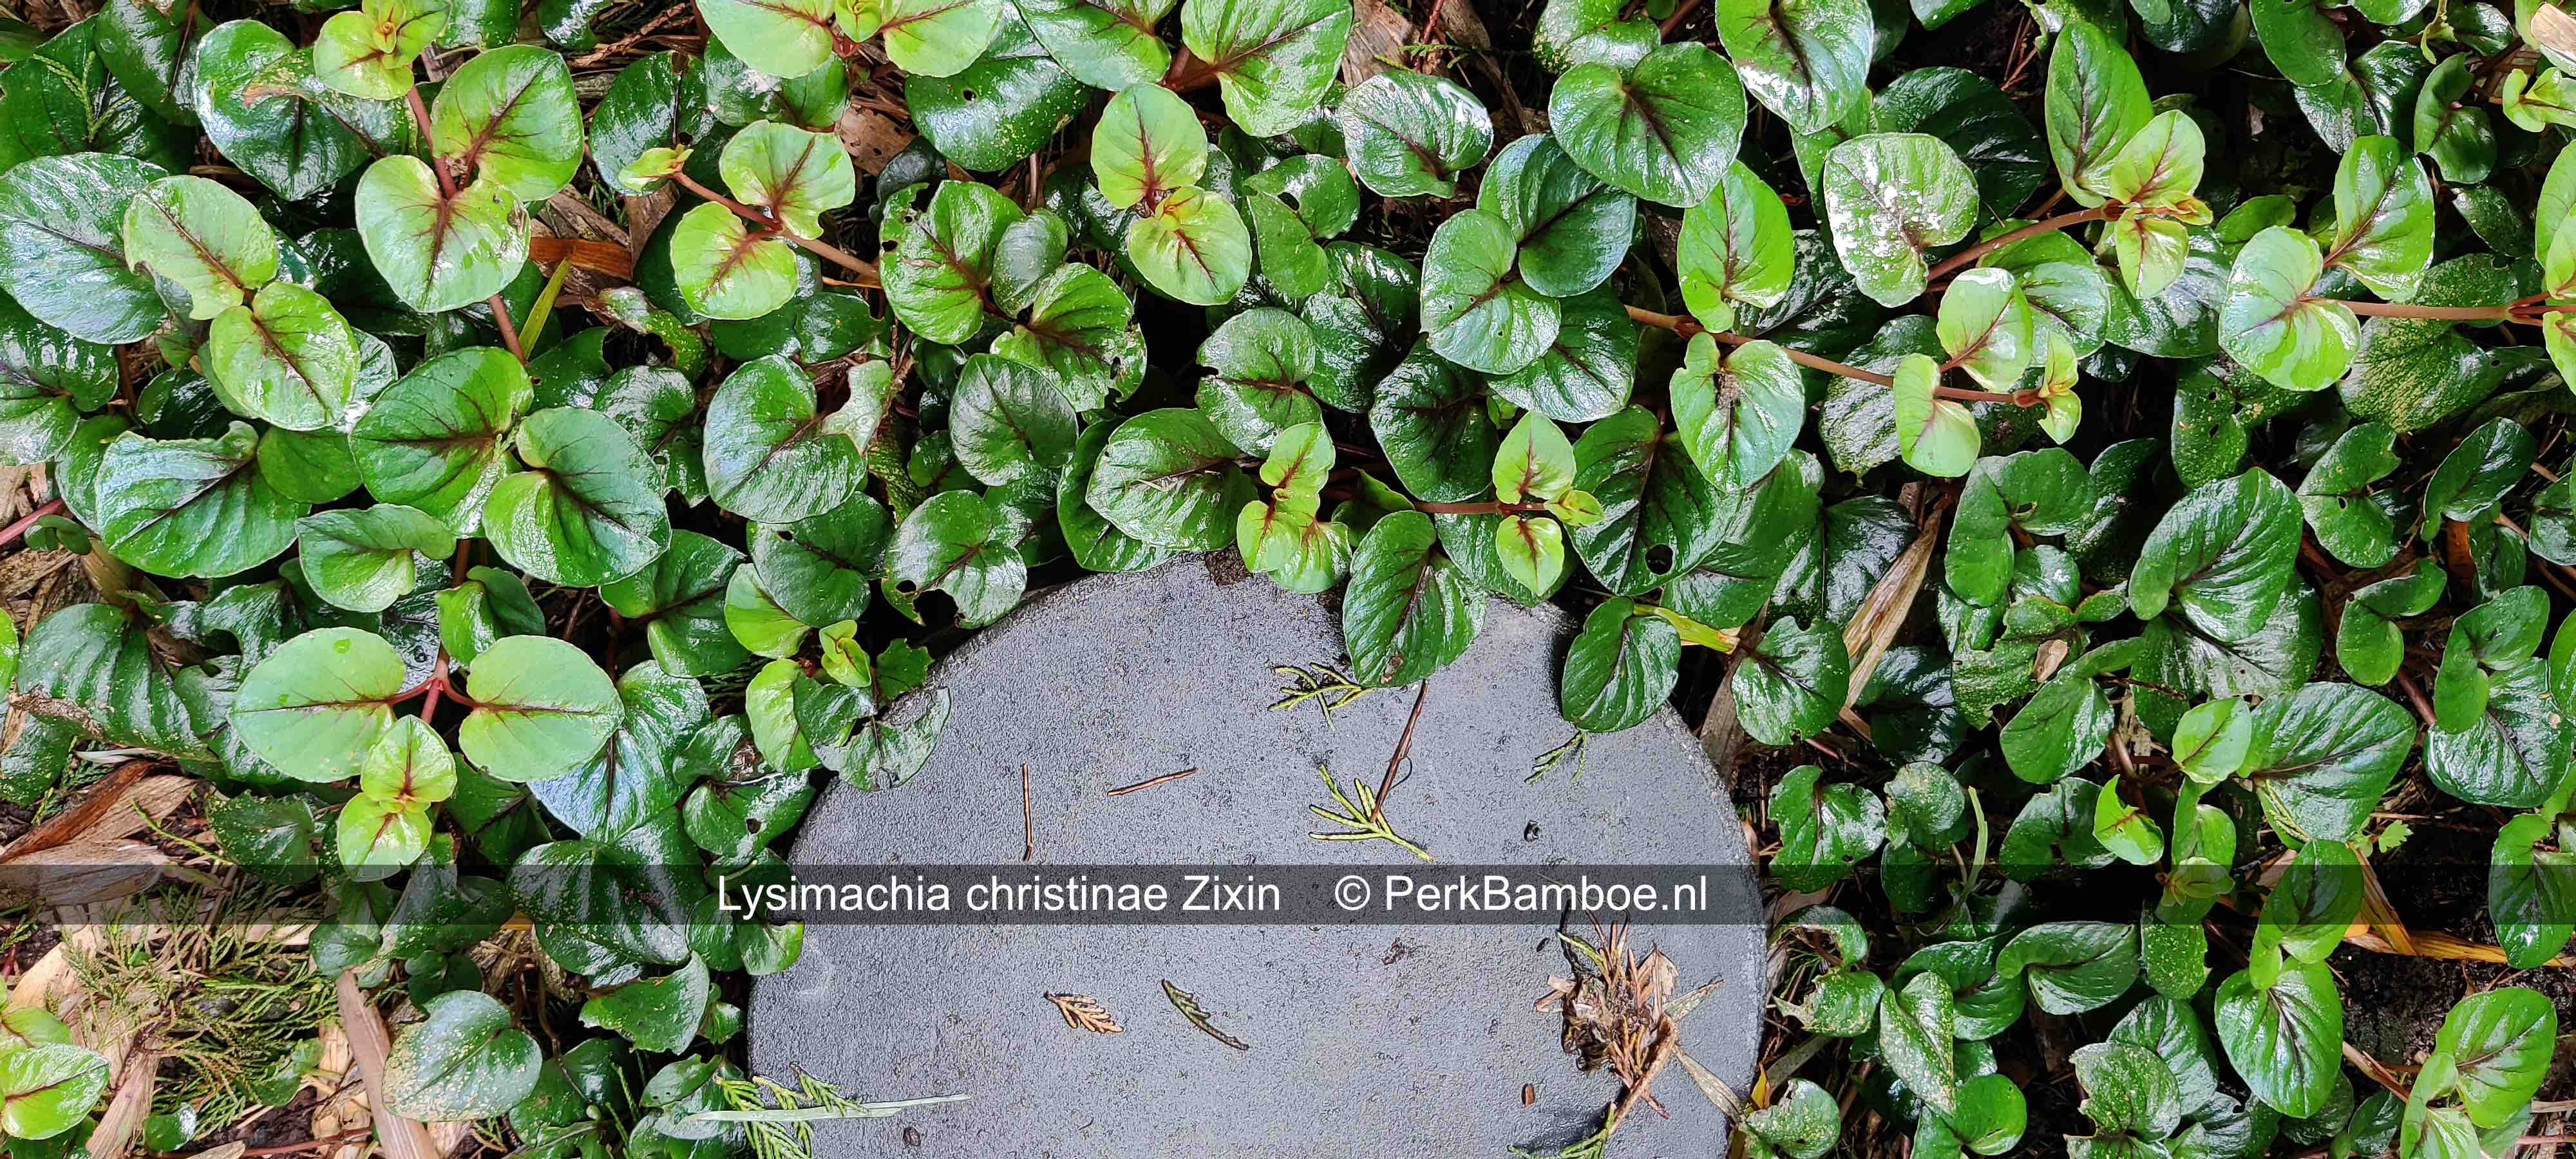 Lysimachia Zixin 4 PerkBamboe nl